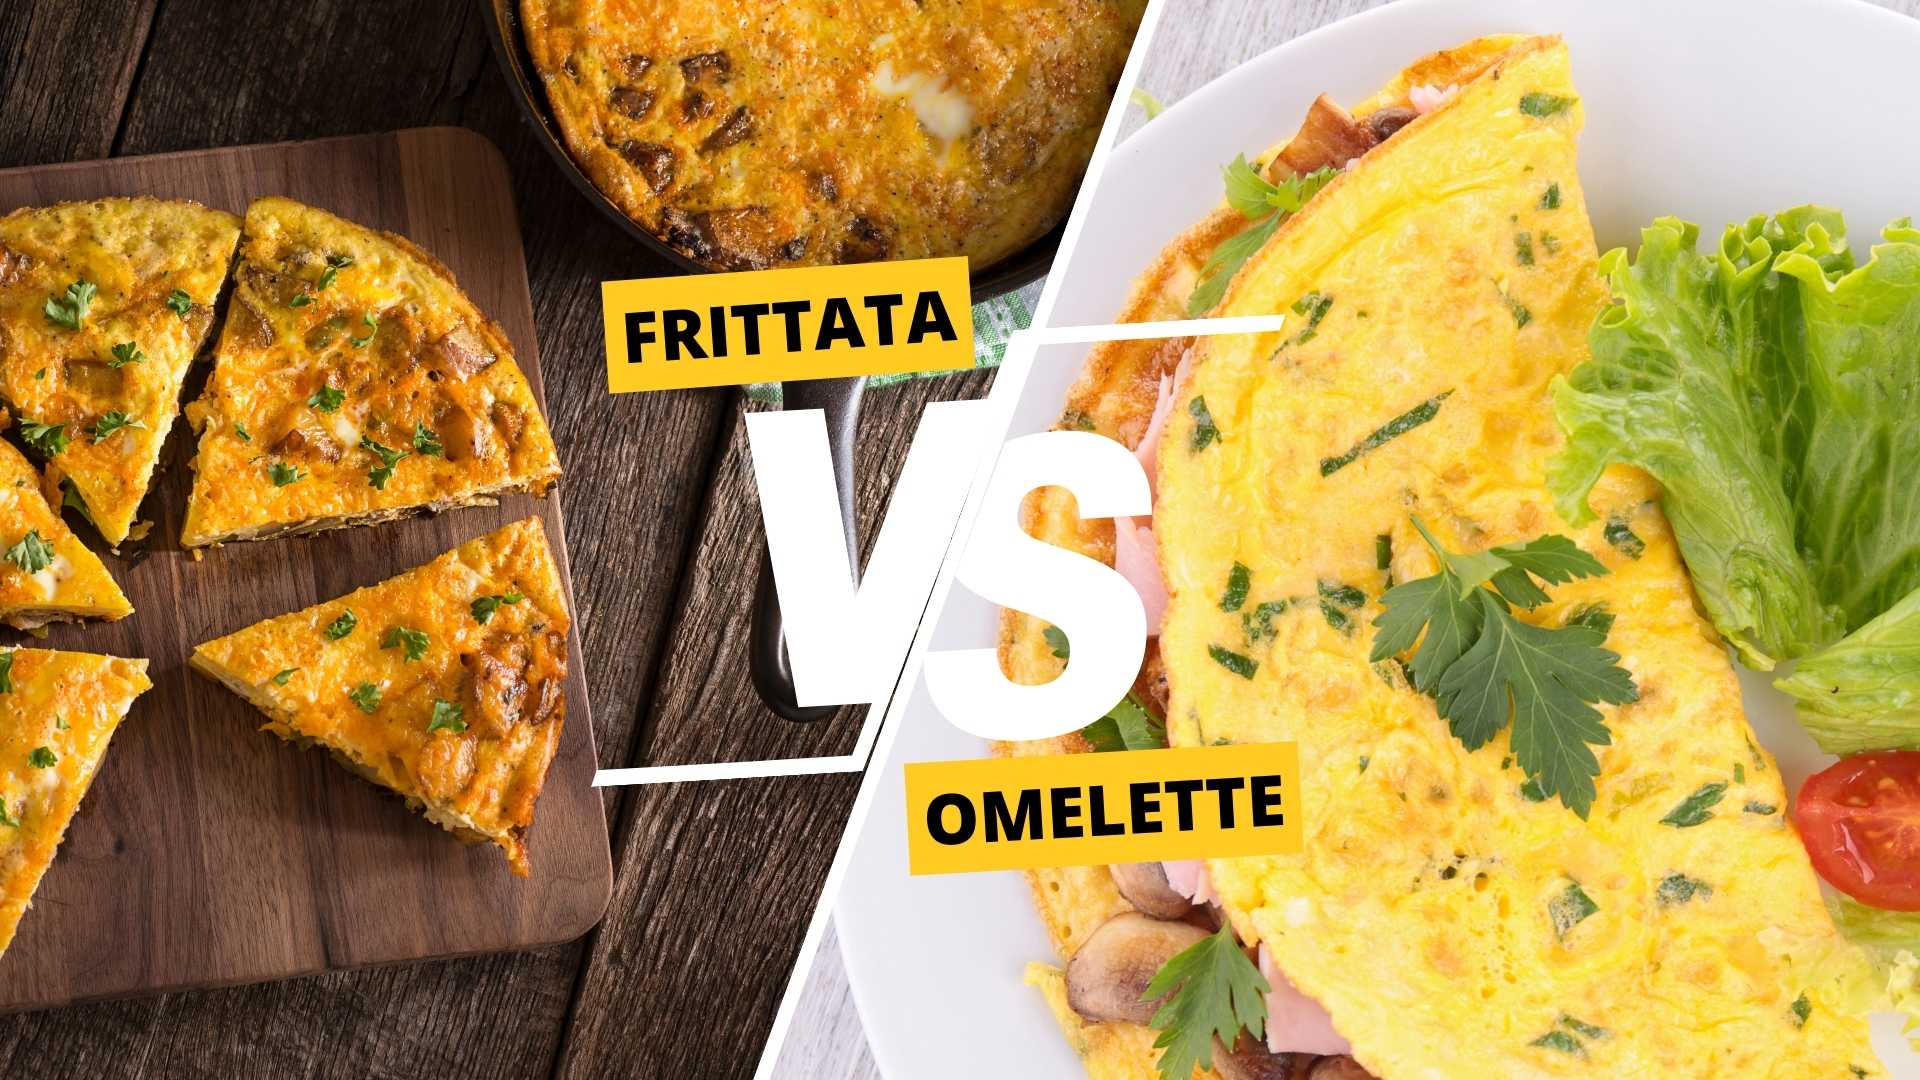 Frittata vs Omelette